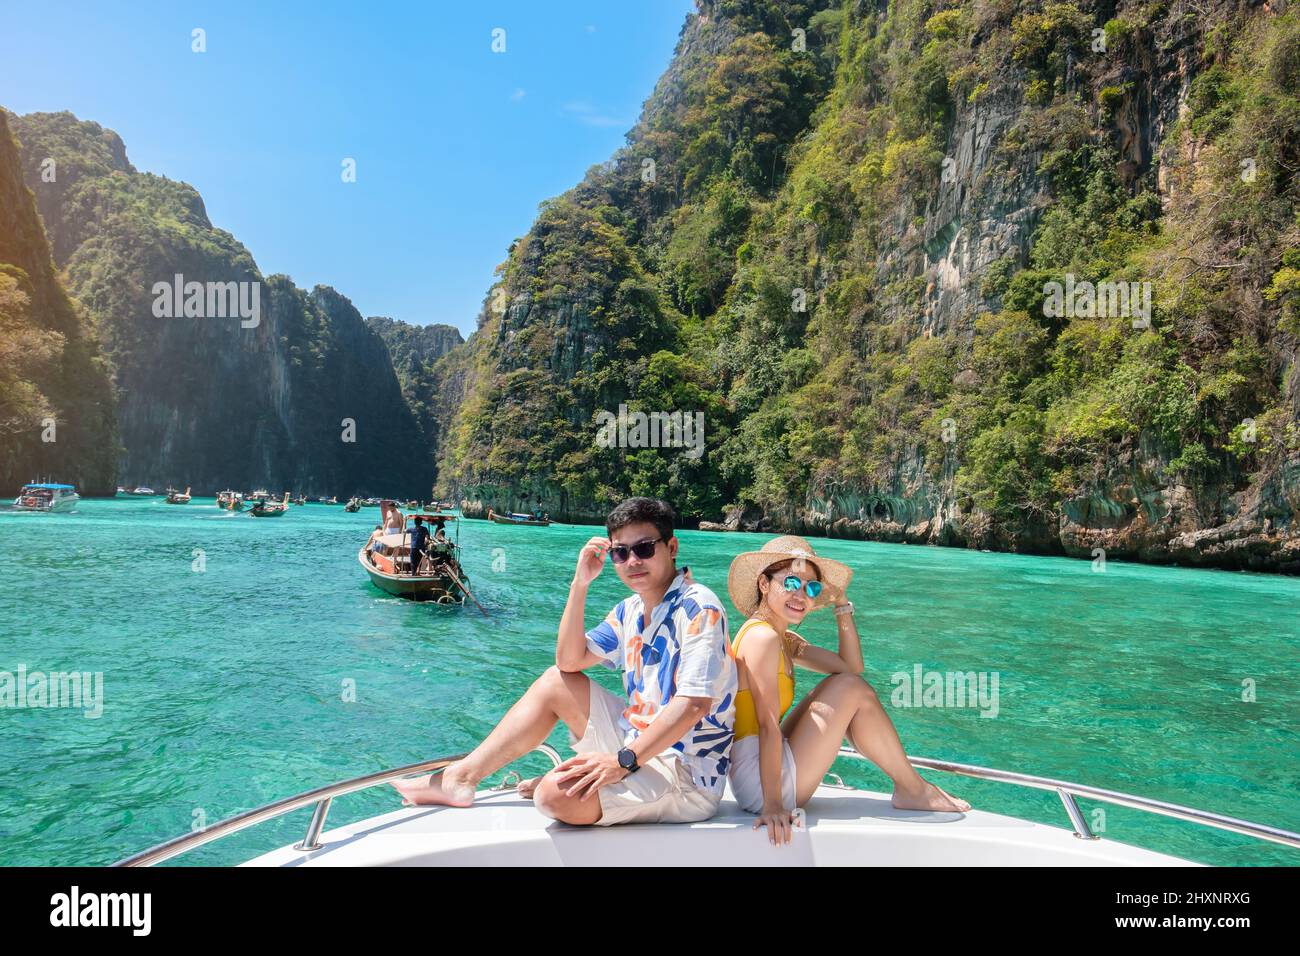 Paar Touristen auf Bootsfahrt, glücklicher Reisender, der sich in der Pileh Lagune auf der Insel Phi Phi, Krabi, Thailand, entspannt. Exotisch, Flitterwochen, Liebe, Reiseziel Southea Stockfoto